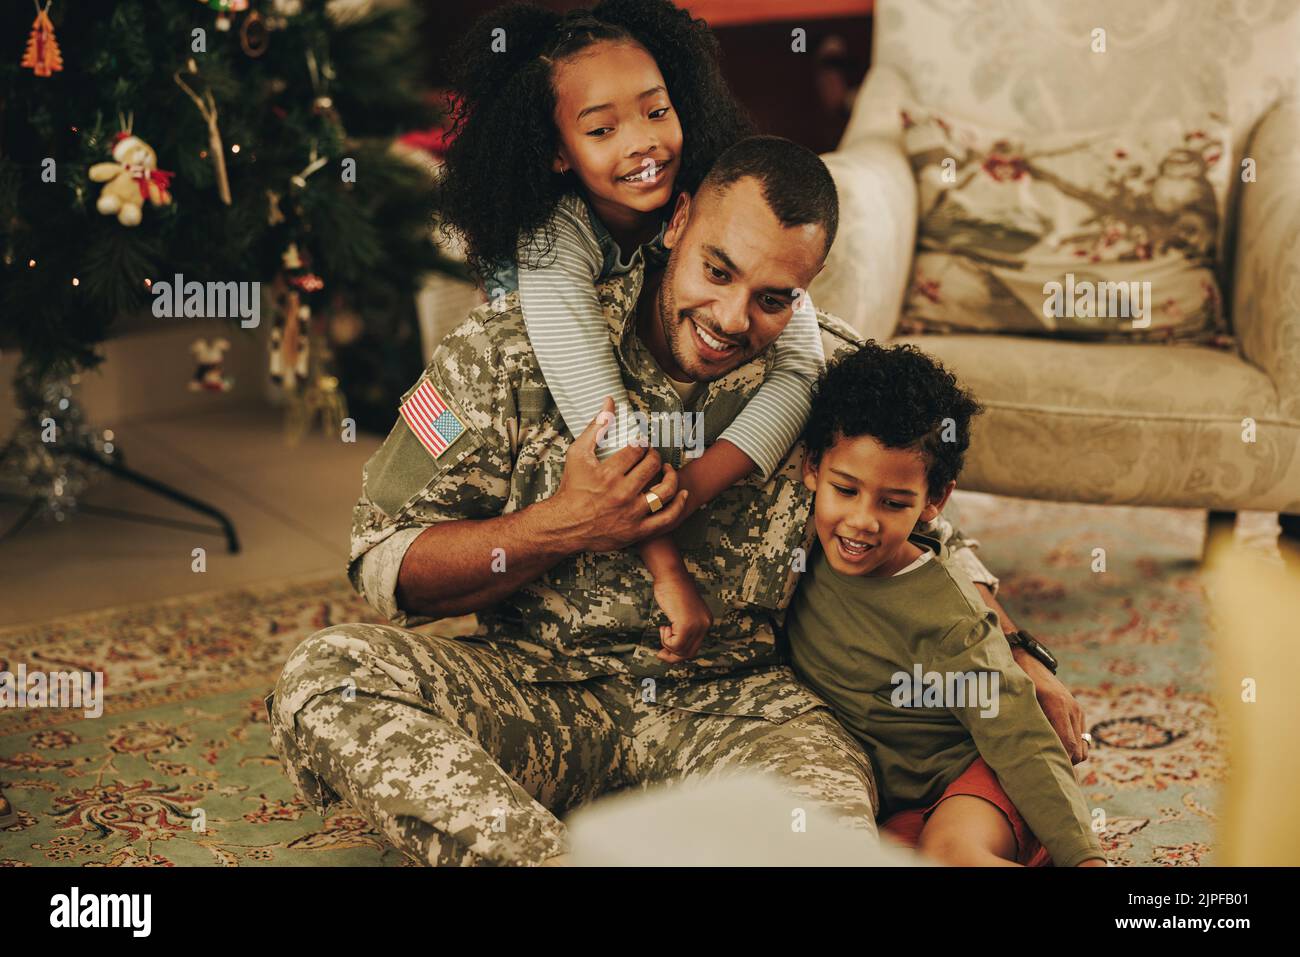 Alegre familia militar sonriendo alegremente mientras pasan la Navidad juntos. Feliz padre militar reuniéndose con sus hijos en Navidad. Soldado spen Foto de stock